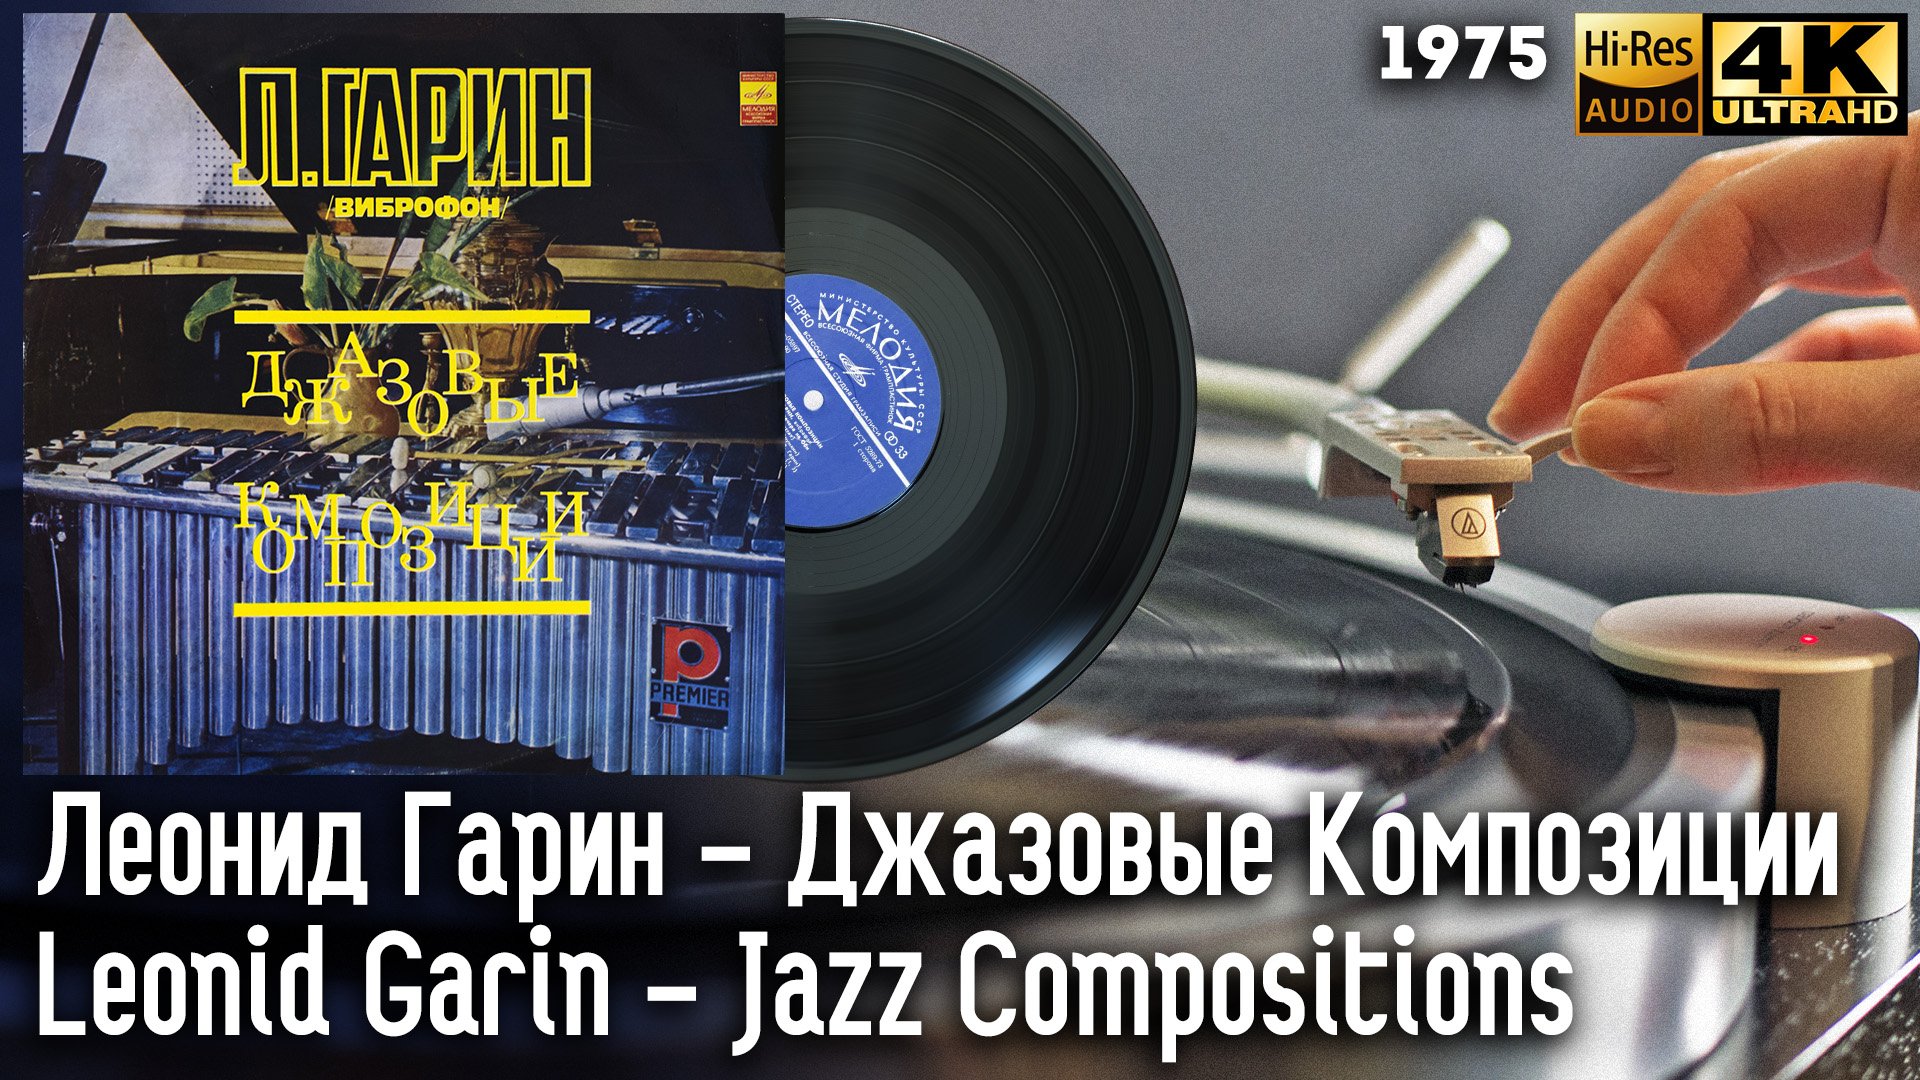 Леонид Гарин - Джазовые Композиции / Leonid Garin - Jazz Compositions, 1975 Vibraphone, Vinyl, LP